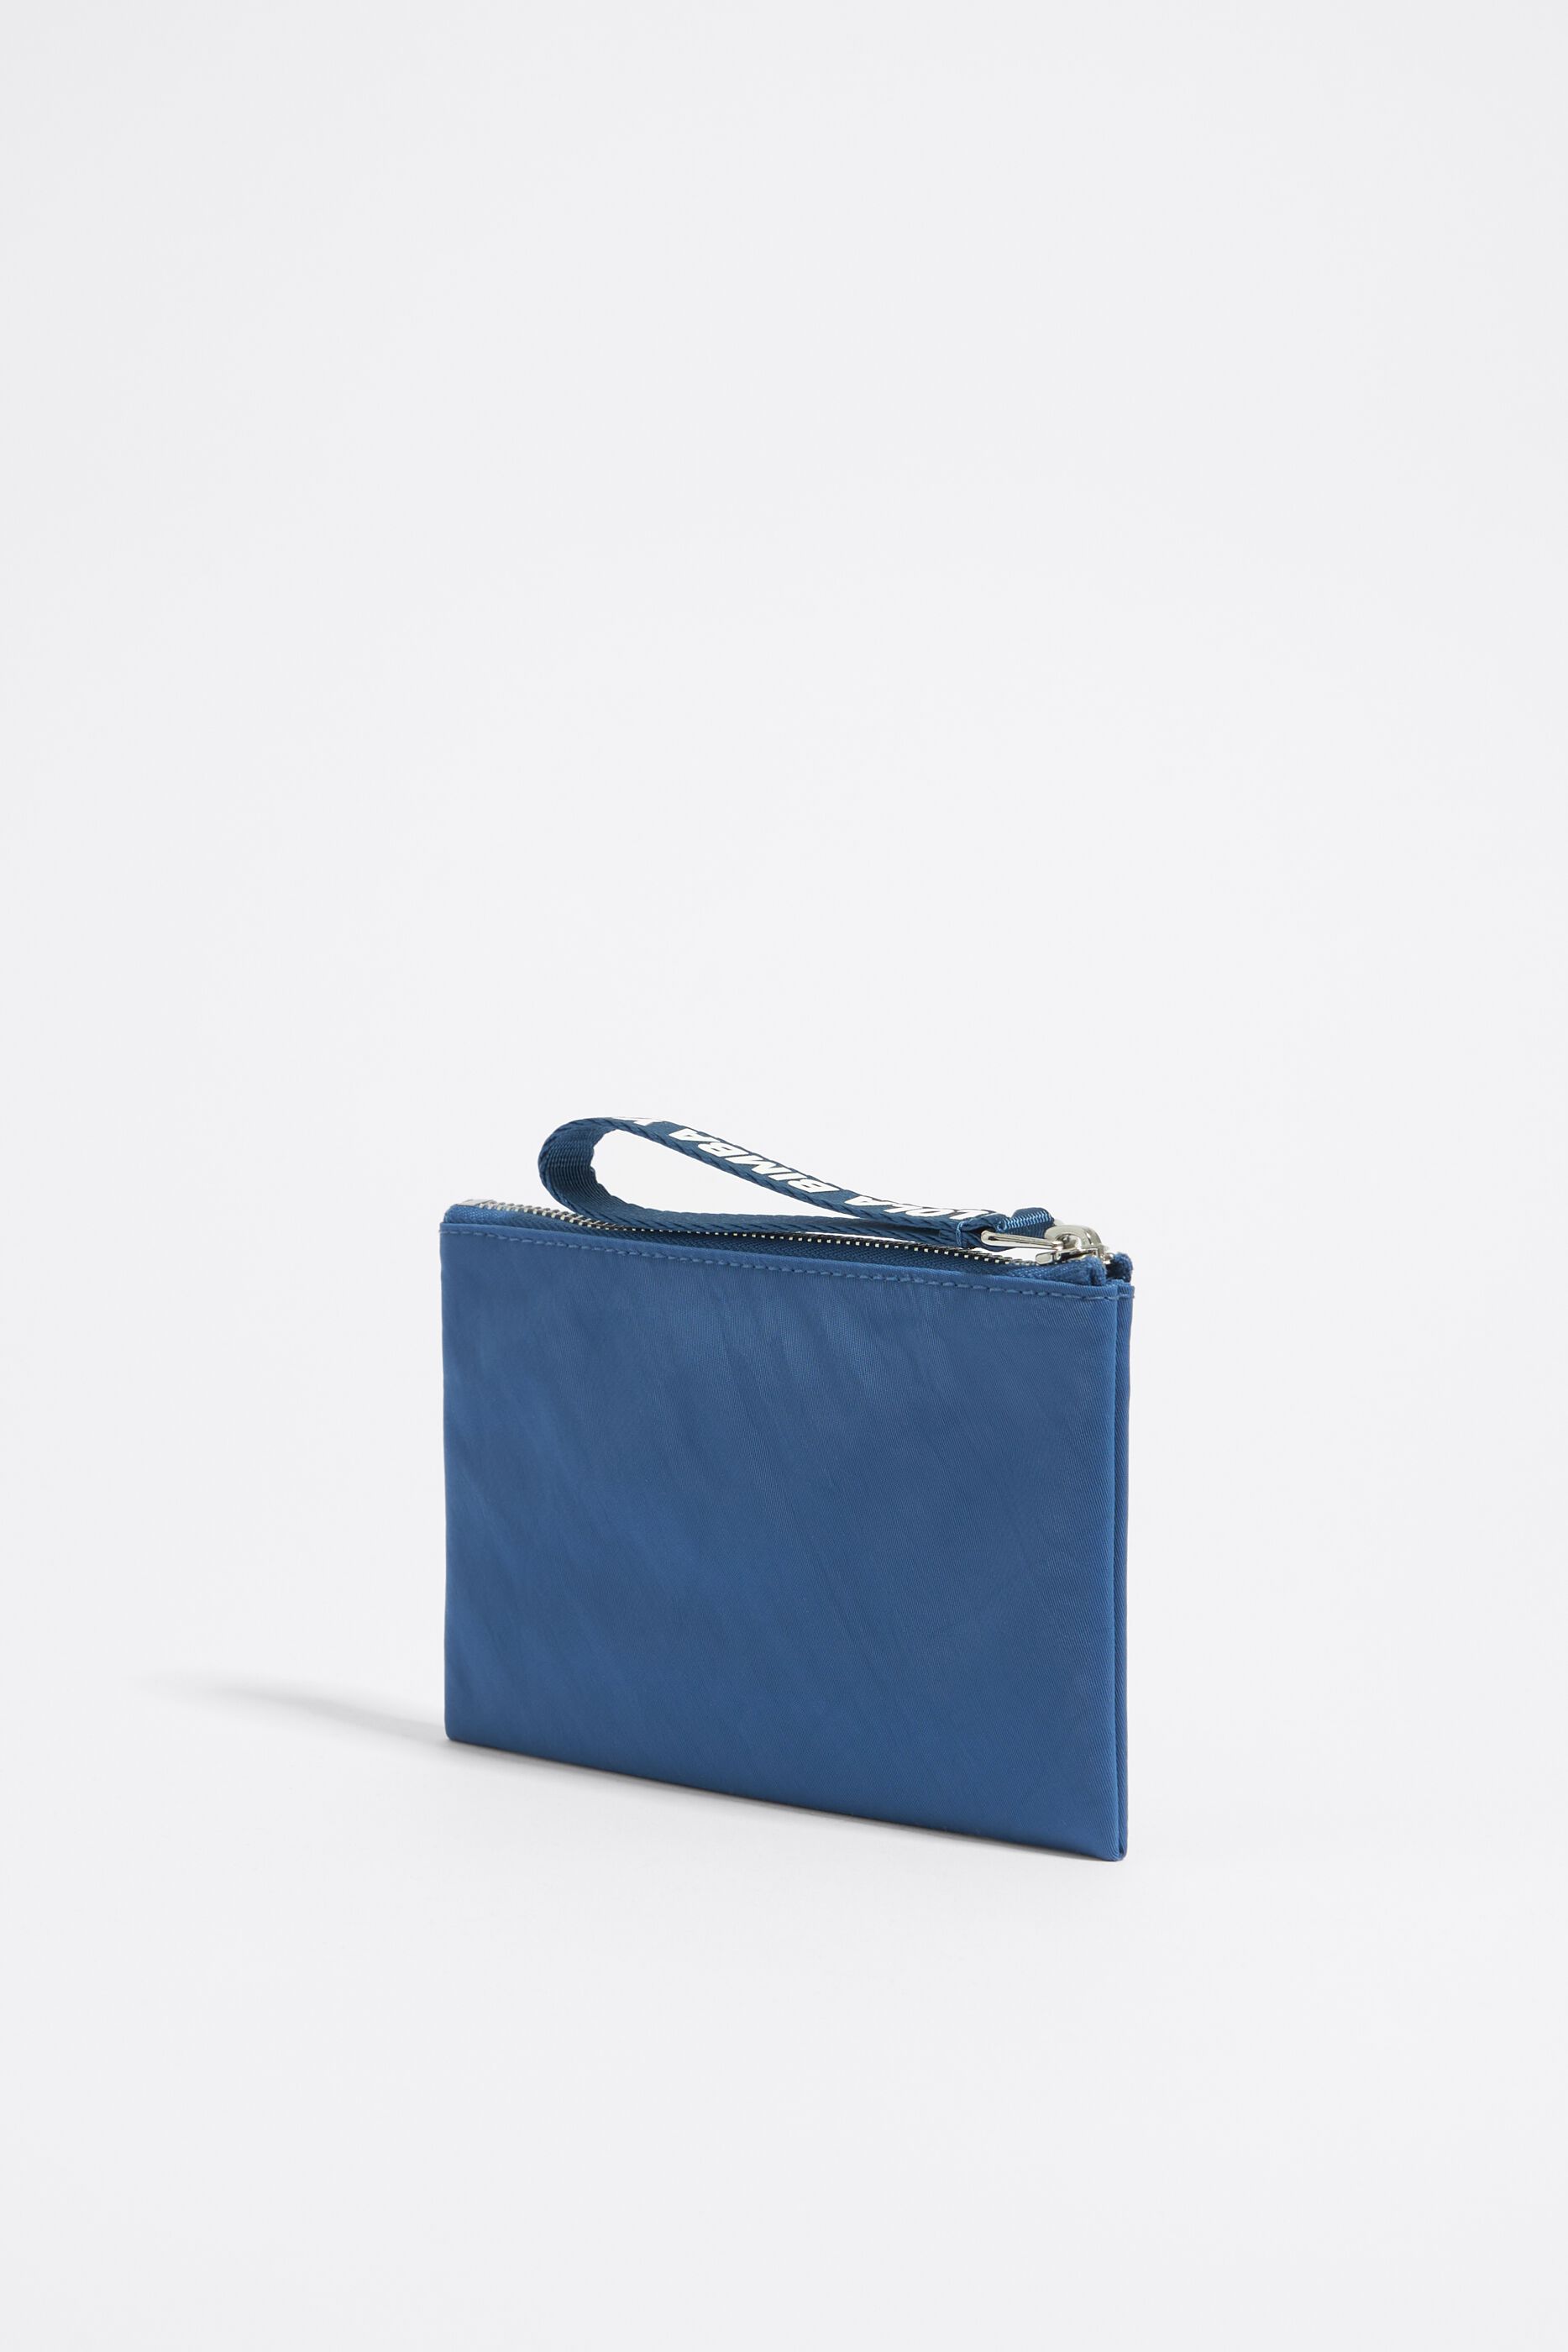 Stefania Blue Croc Leather Baguette Shoulder Bag | Loeffler Randall